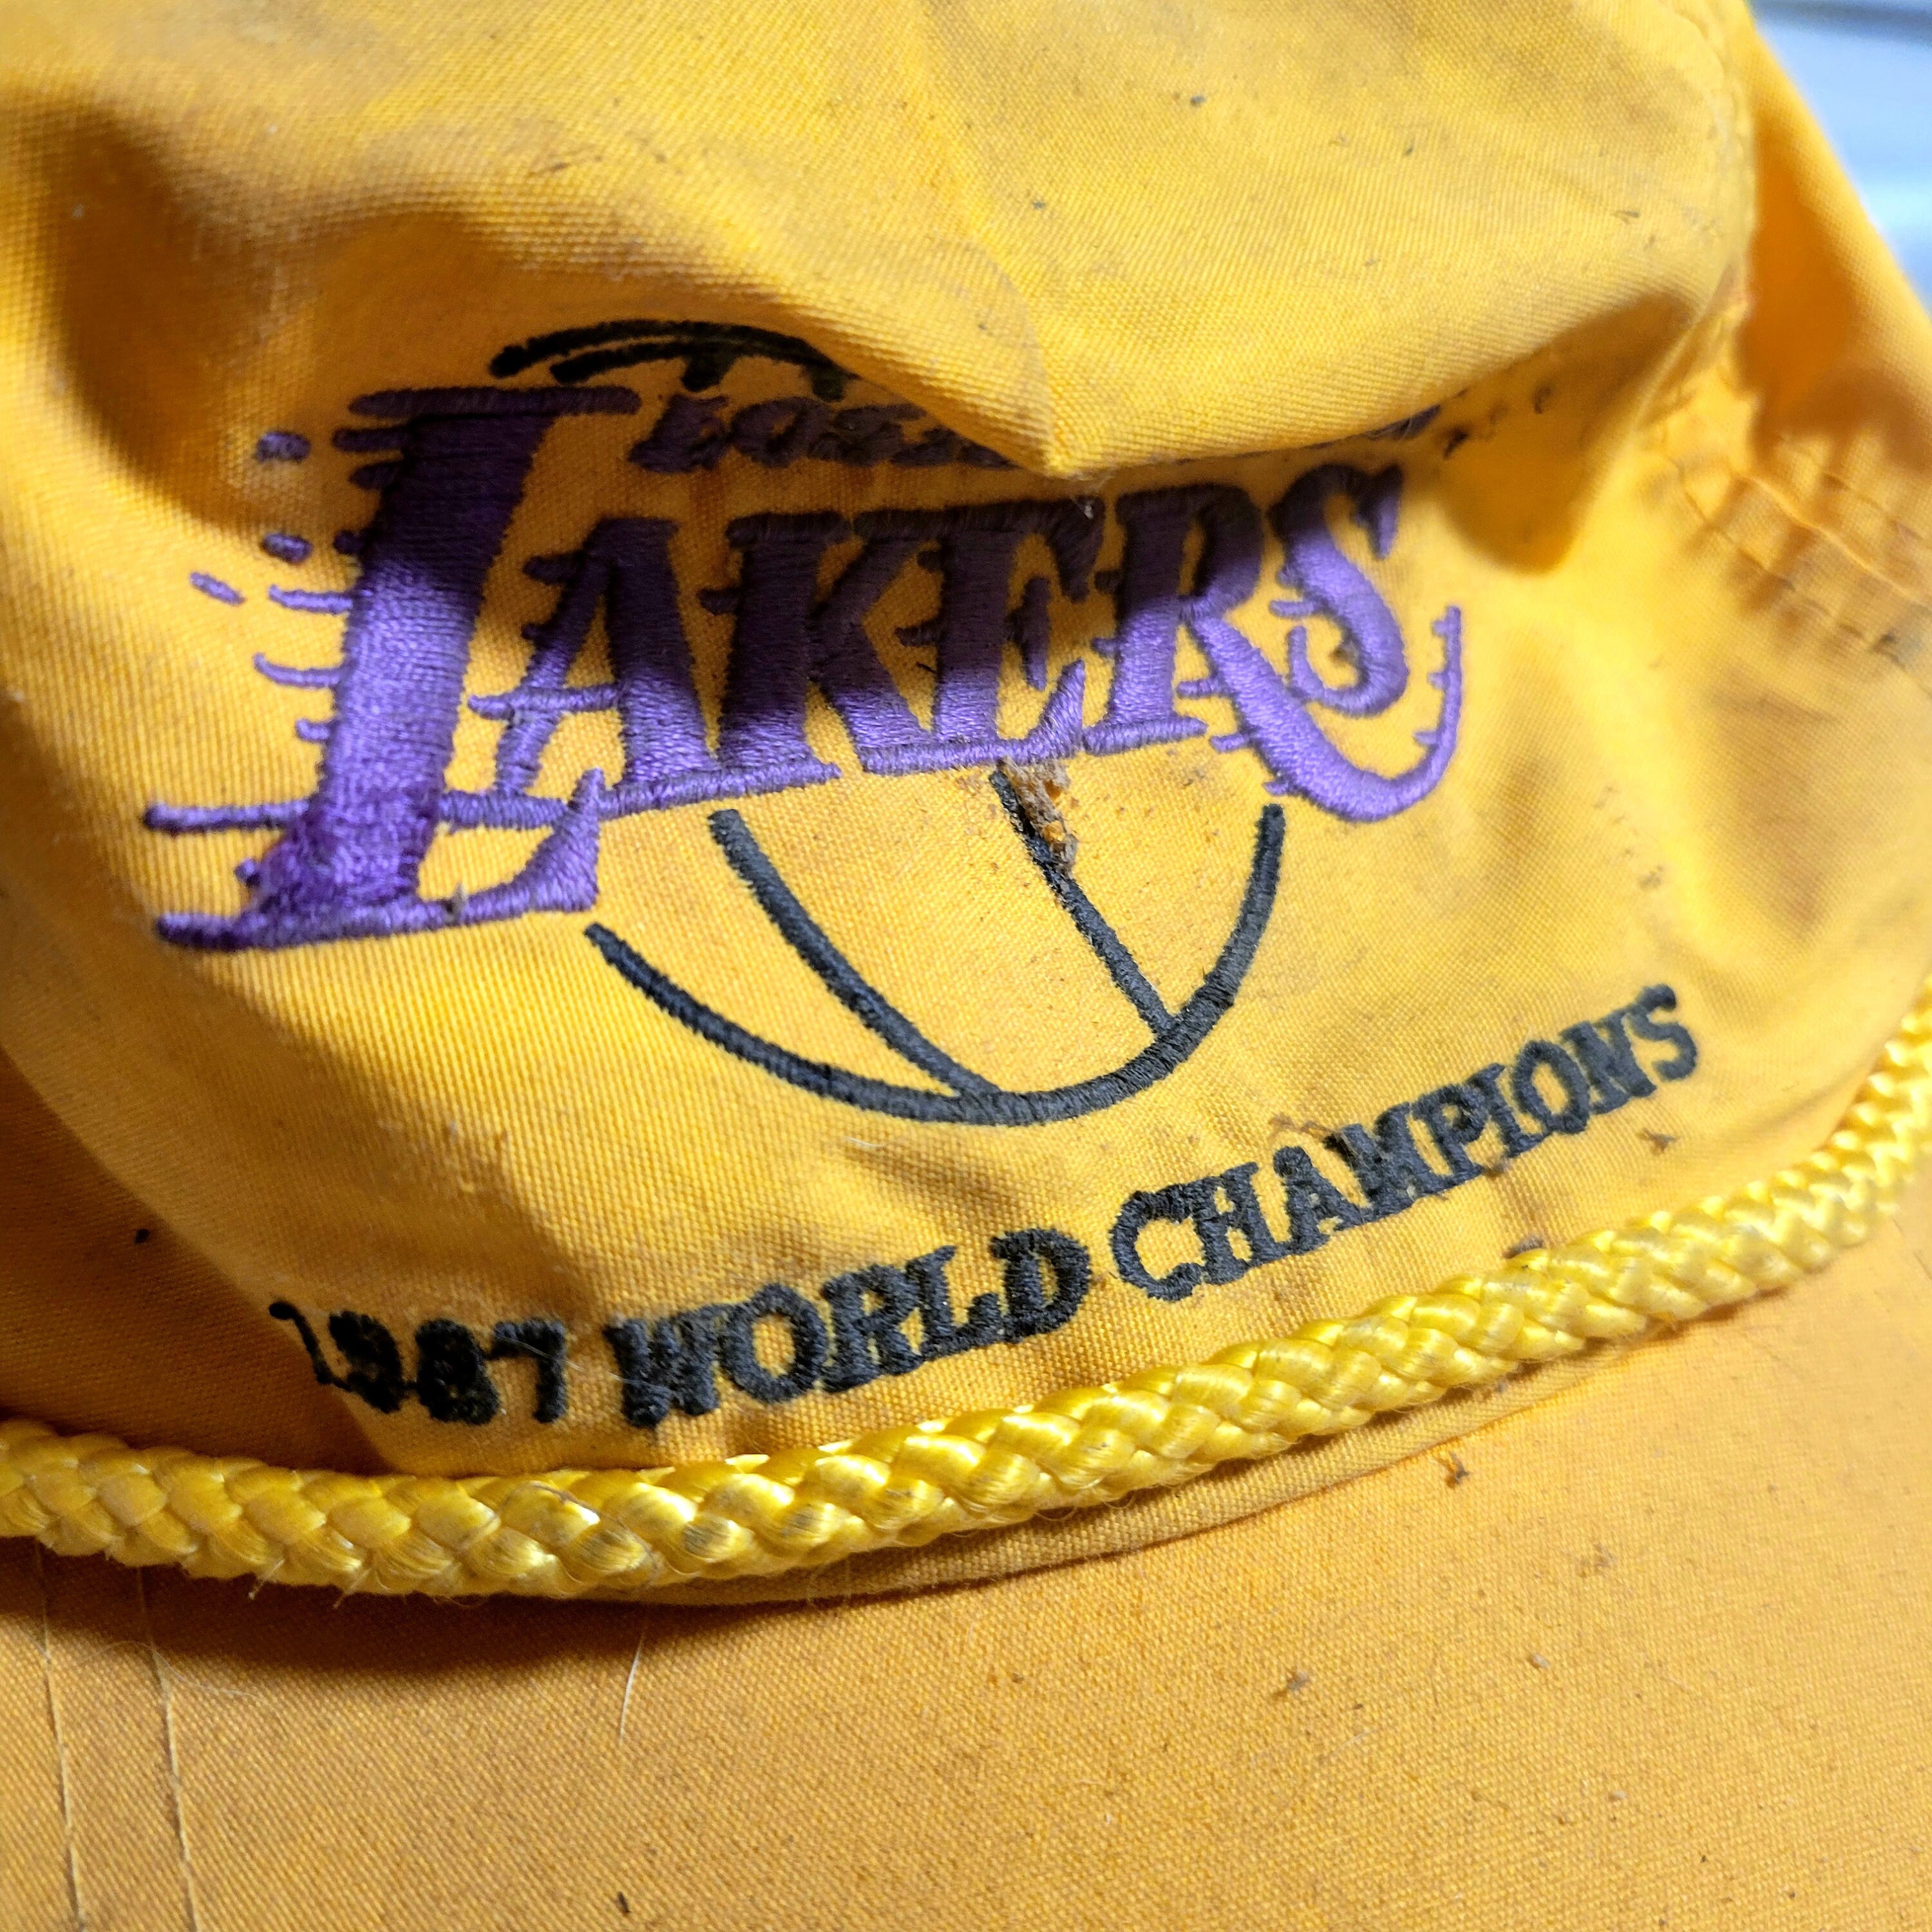 NBA LA Lakers Concept Crenshaw 8 Kobe Bryant KB Patch Men Jersey